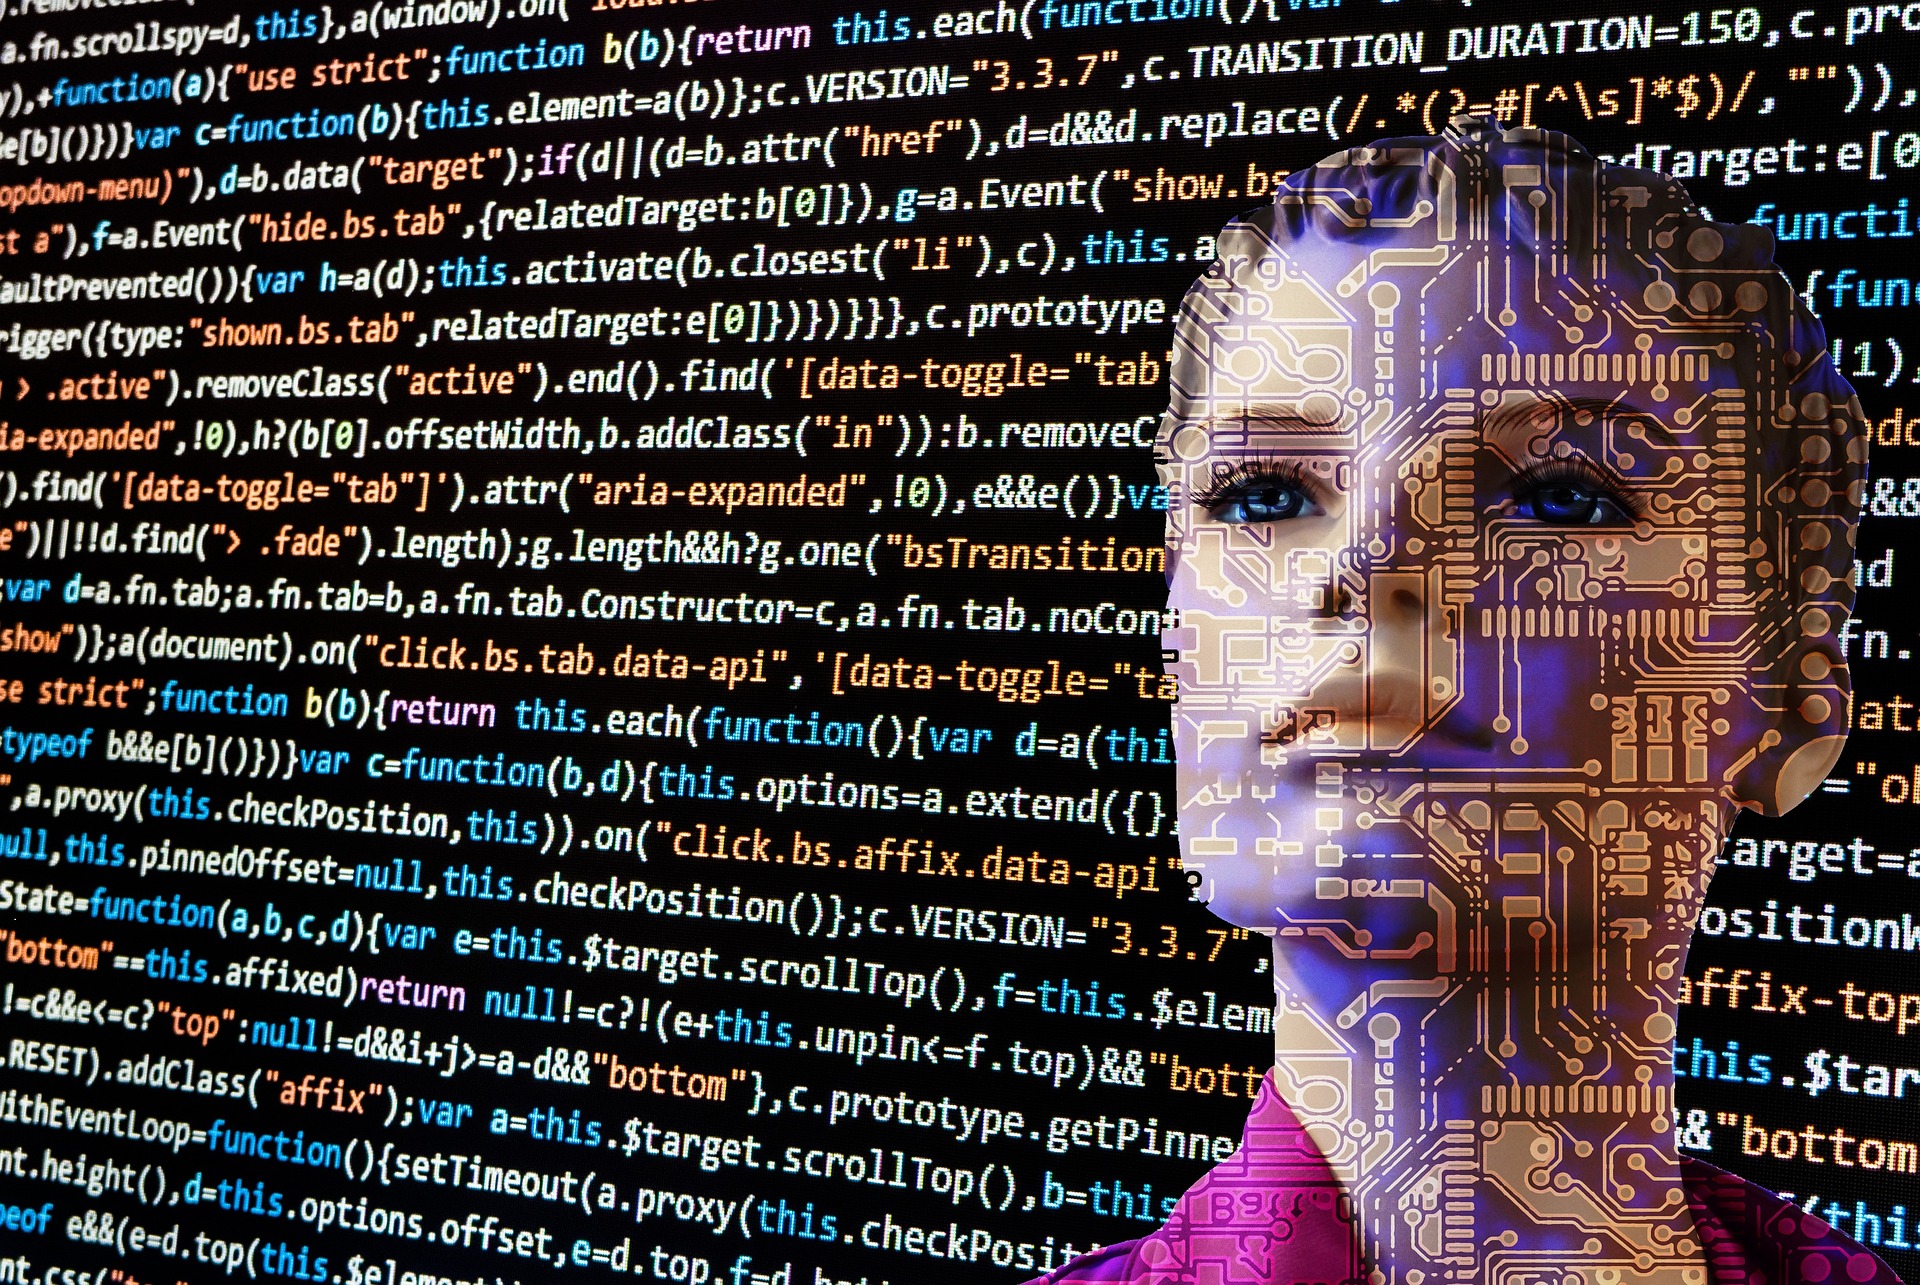 Logística i intel·ligència artificial (IA)